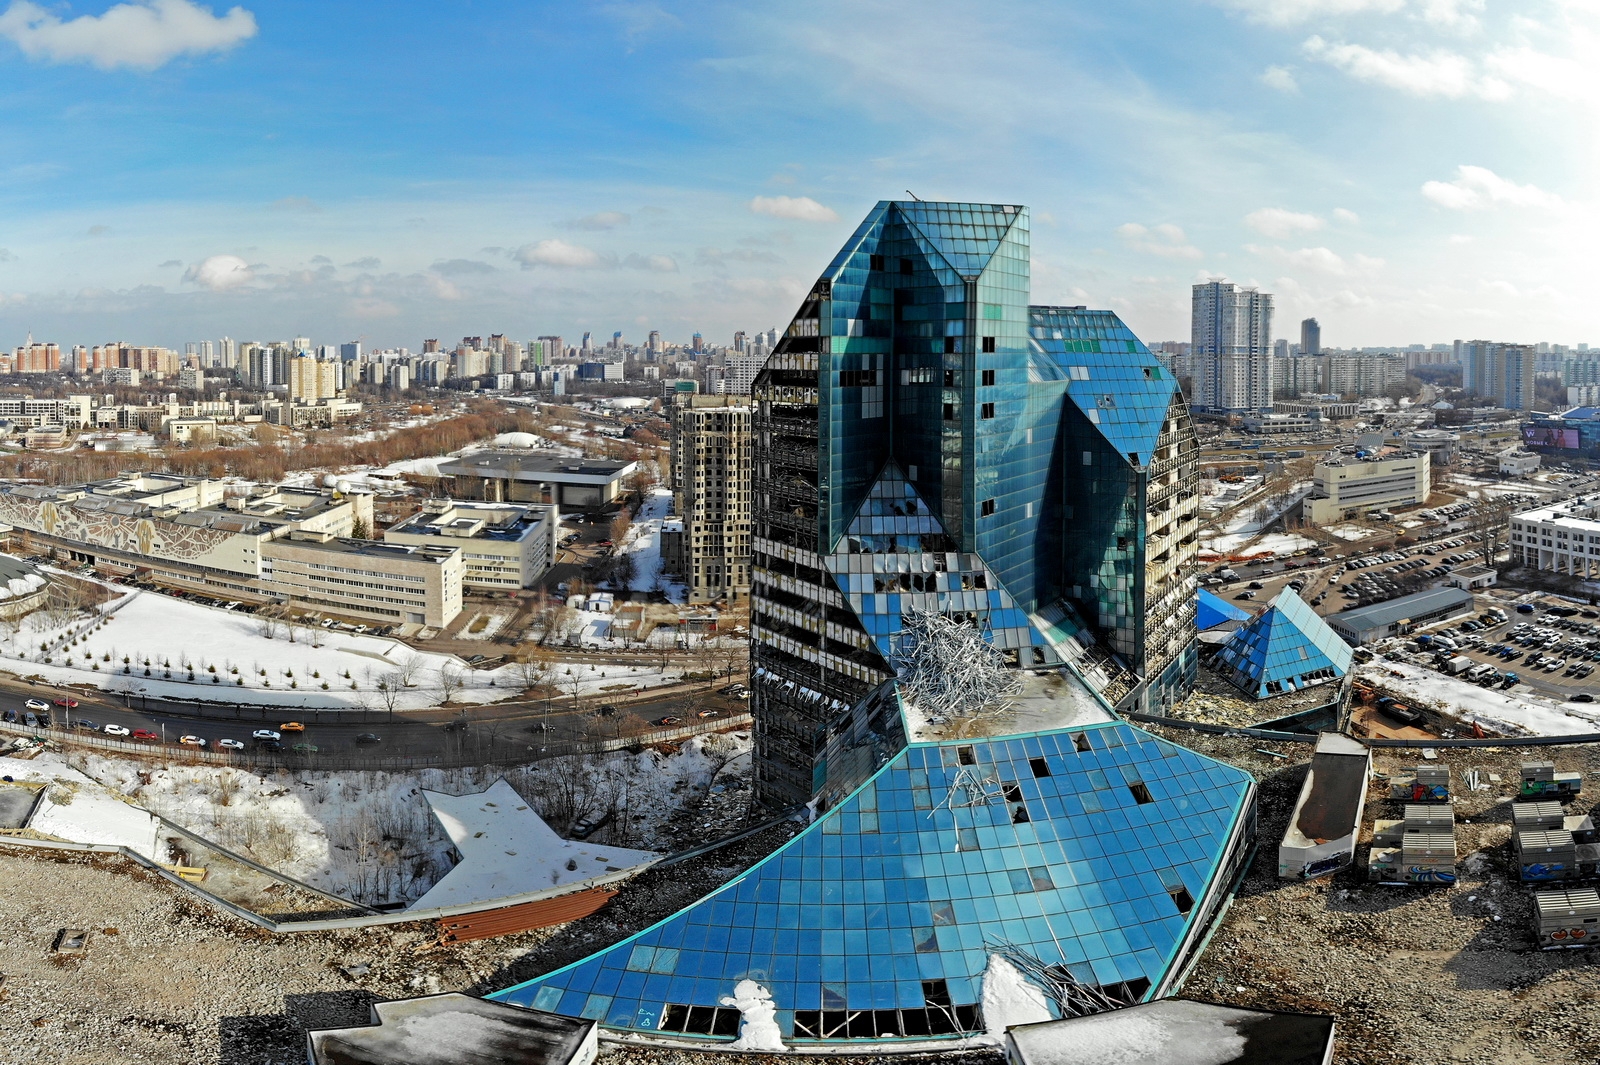 Здание ранхигс в москве